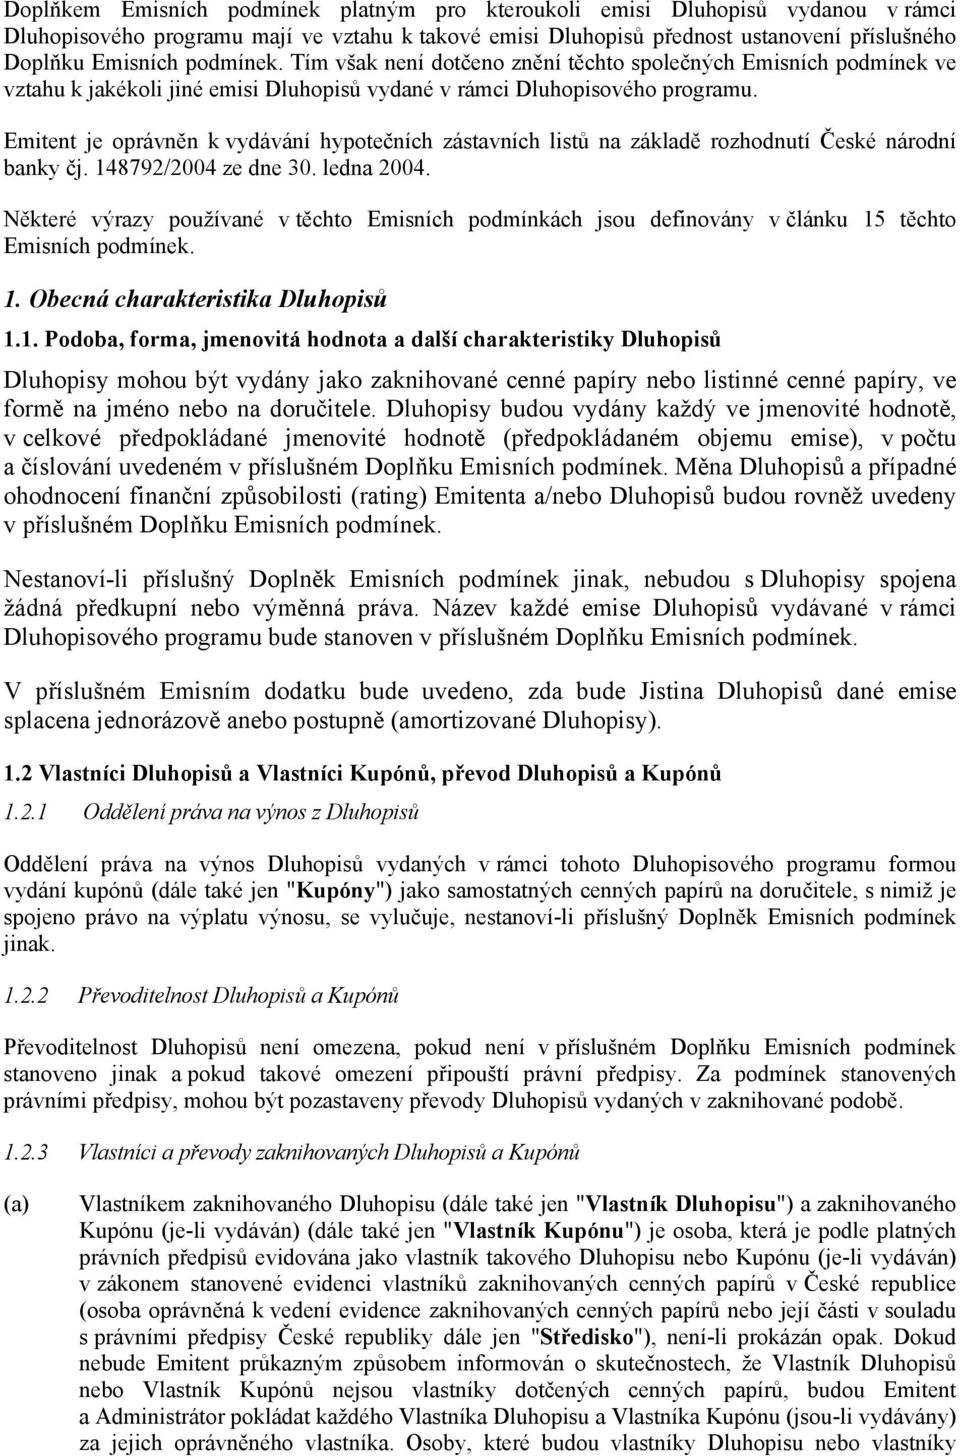 Emitent je oprávněn k vydávání hypotečních zástavních listů na základě rozhodnutí České národní banky čj. 148792/2004 ze dne 30. ledna 2004.